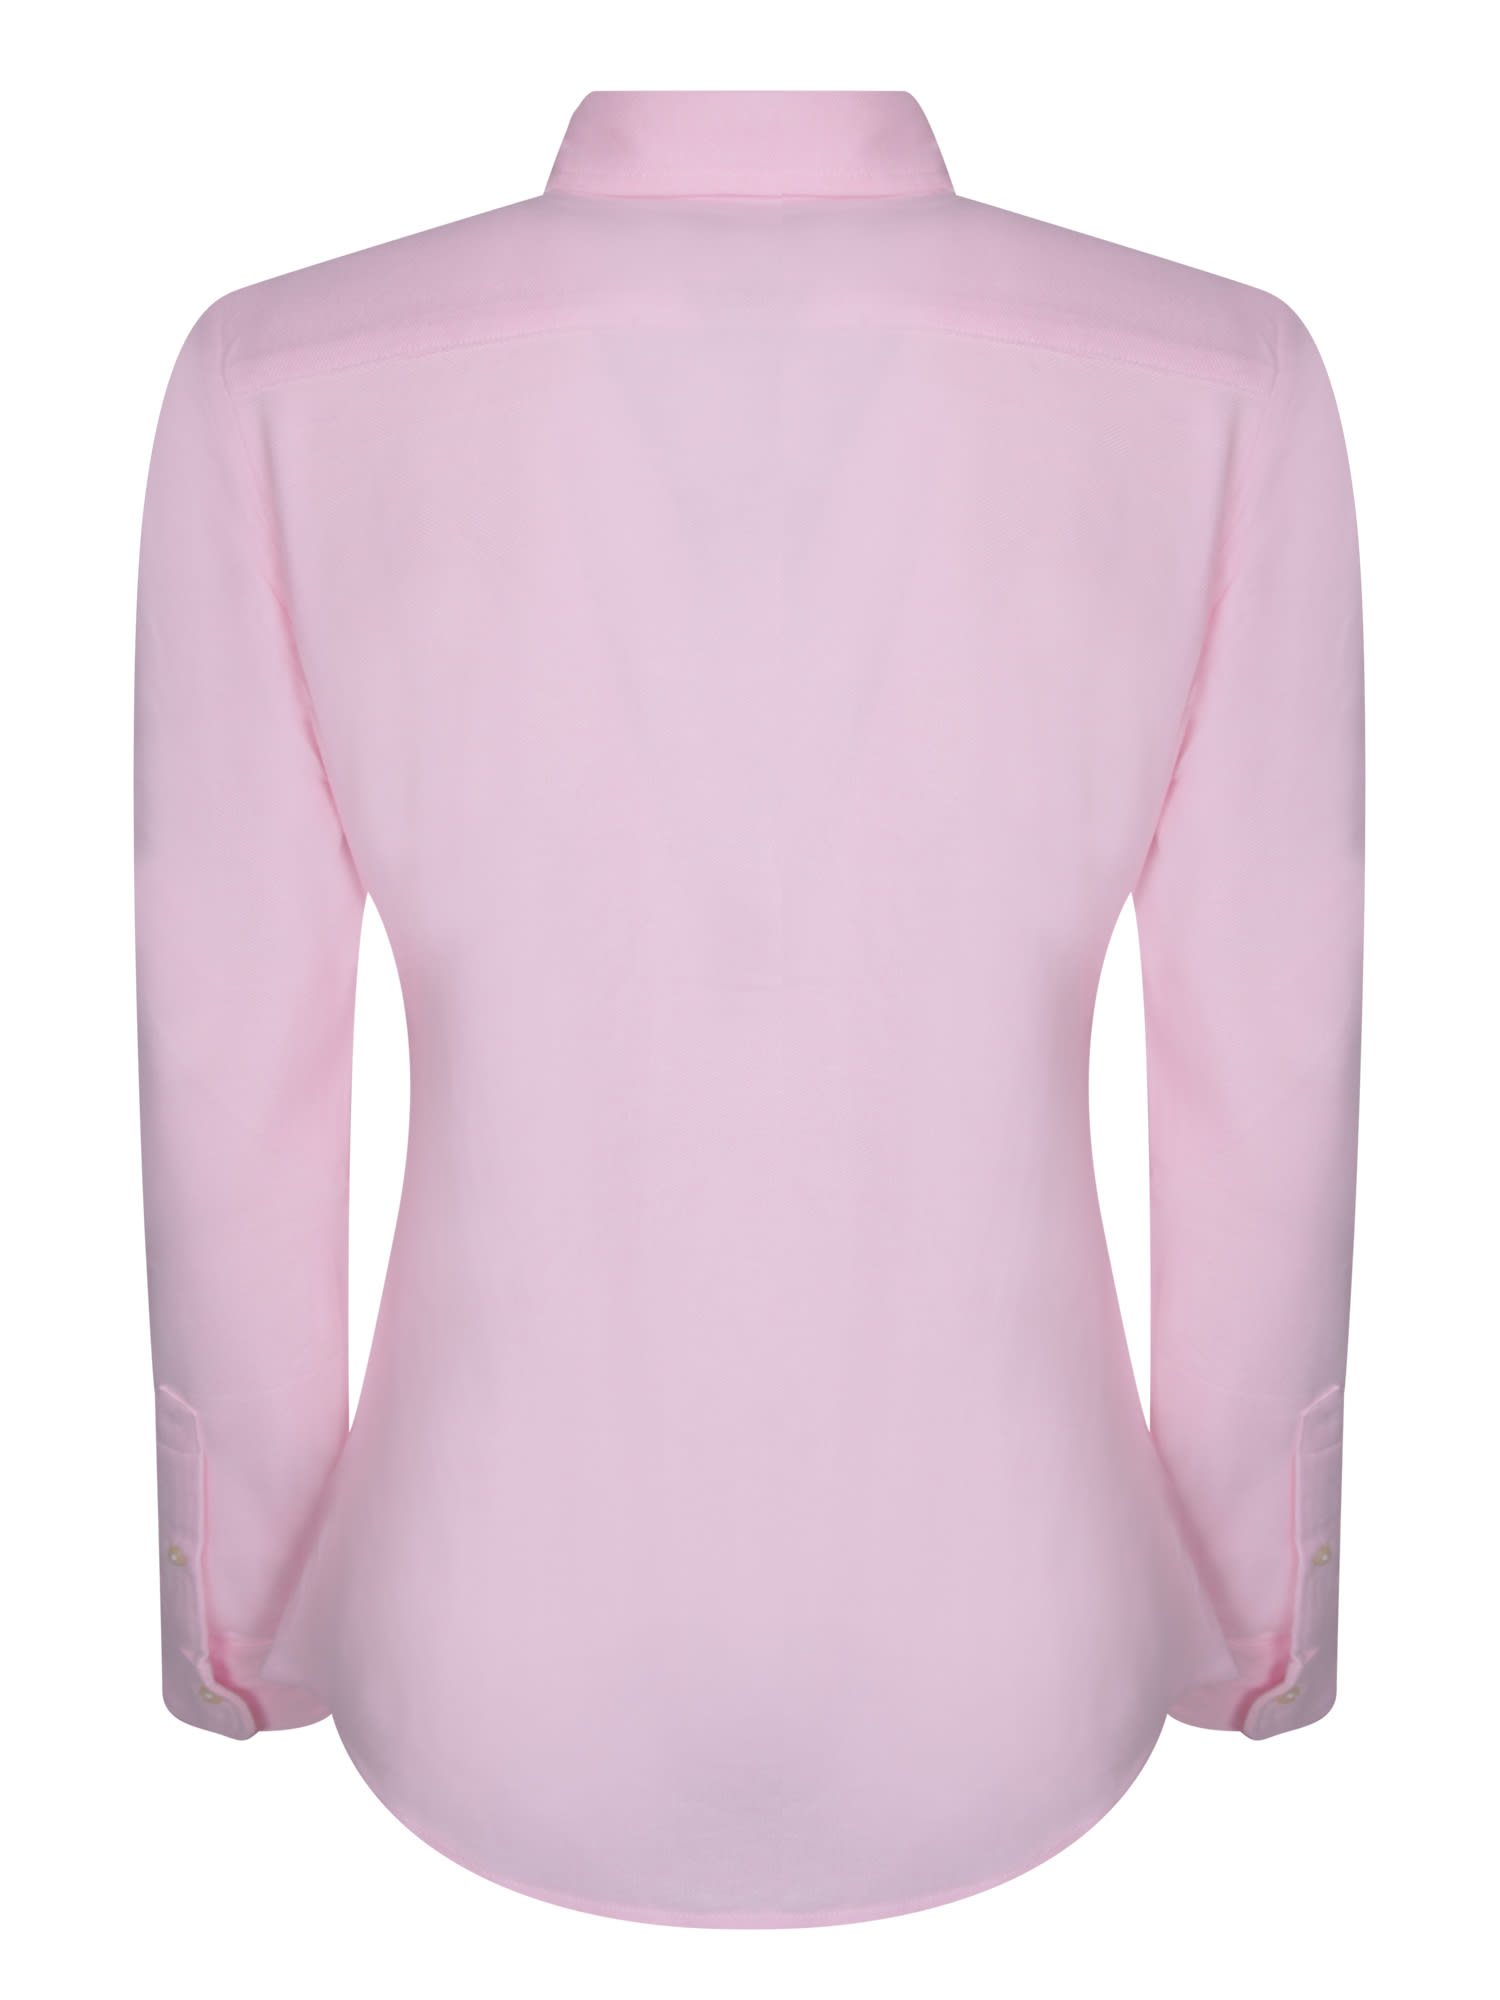 Shop Polo Ralph Lauren Pink Oxford Shirt